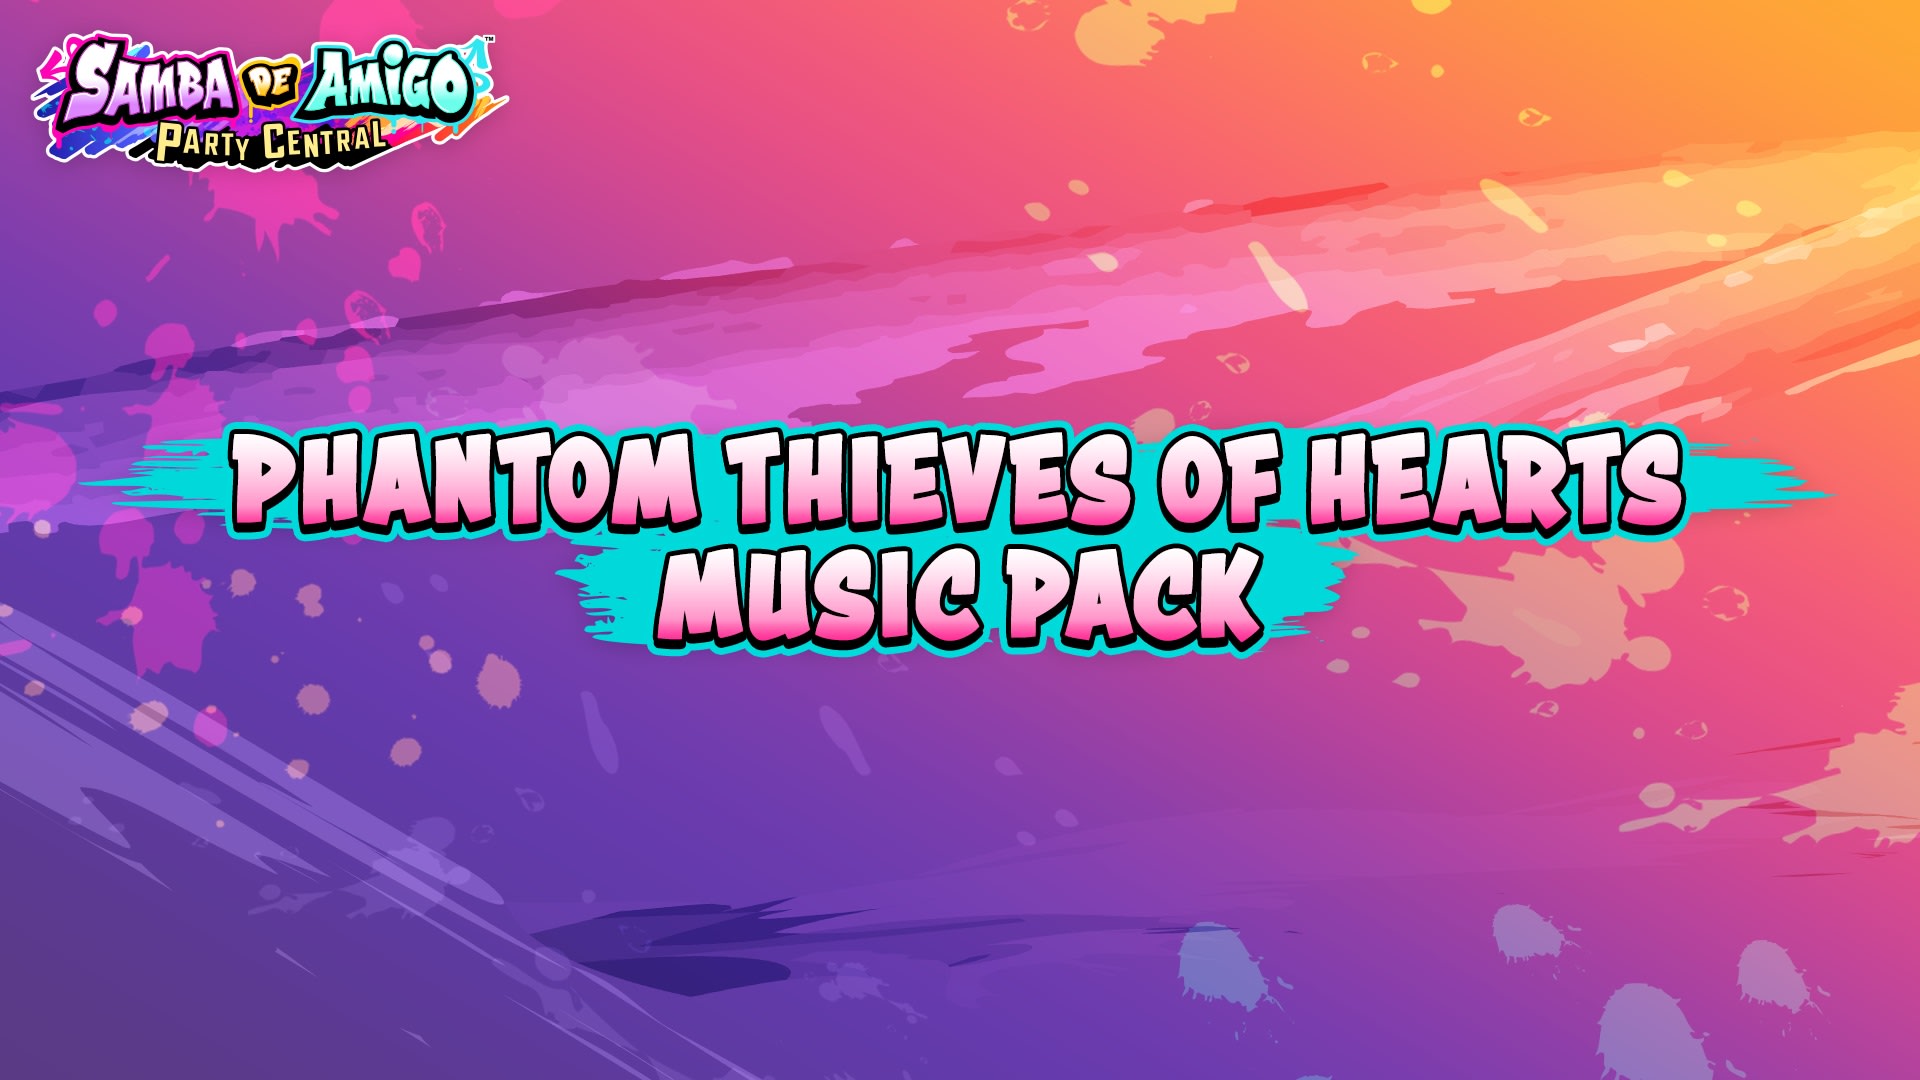 Pacote de Música de Phantom Thieves of Hearts